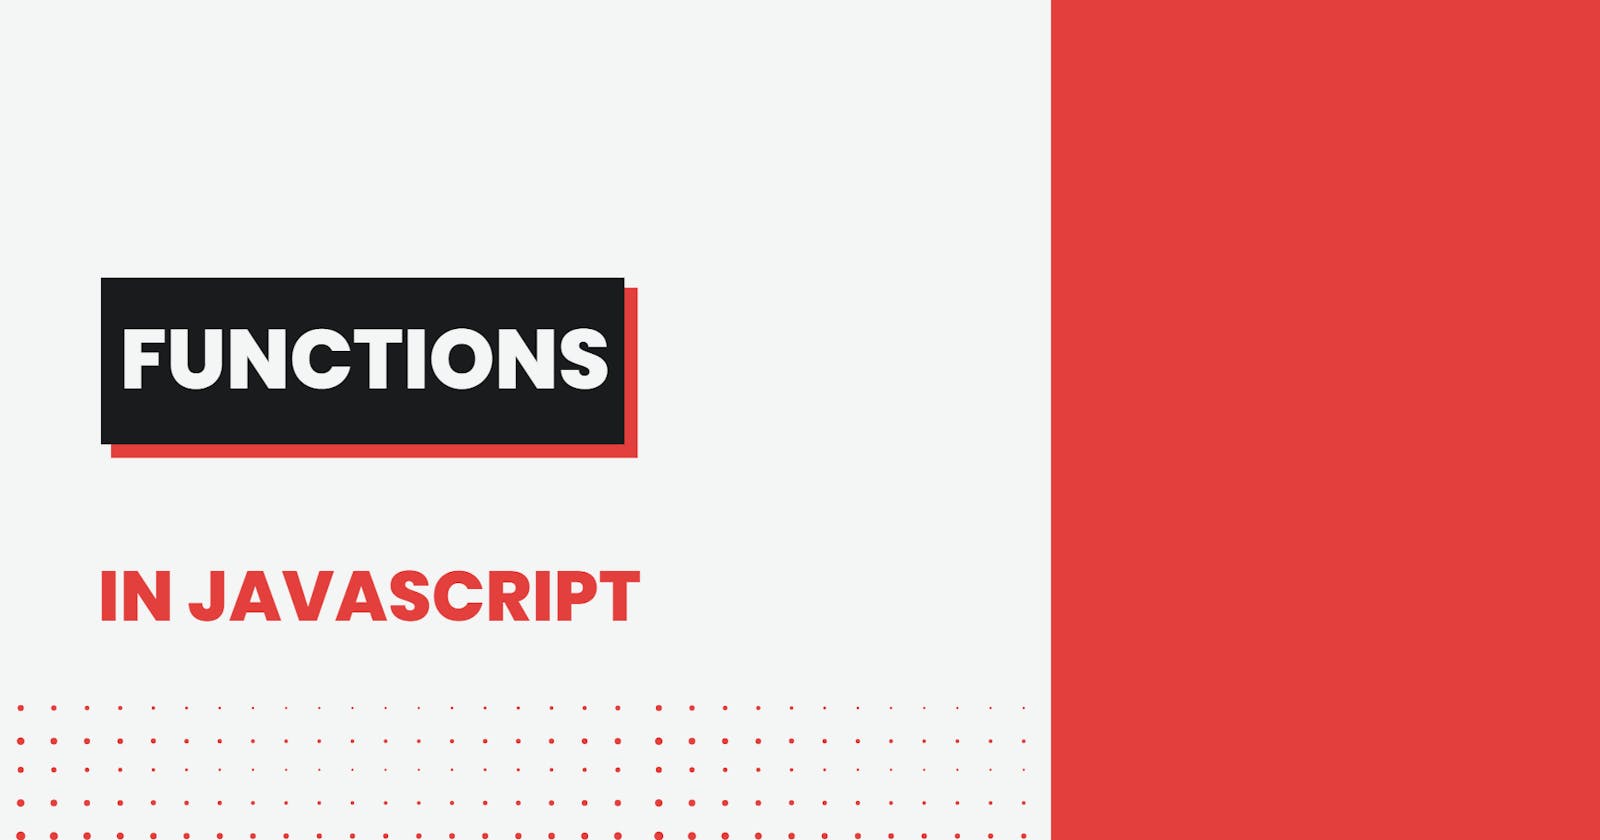 Functions in Java Script